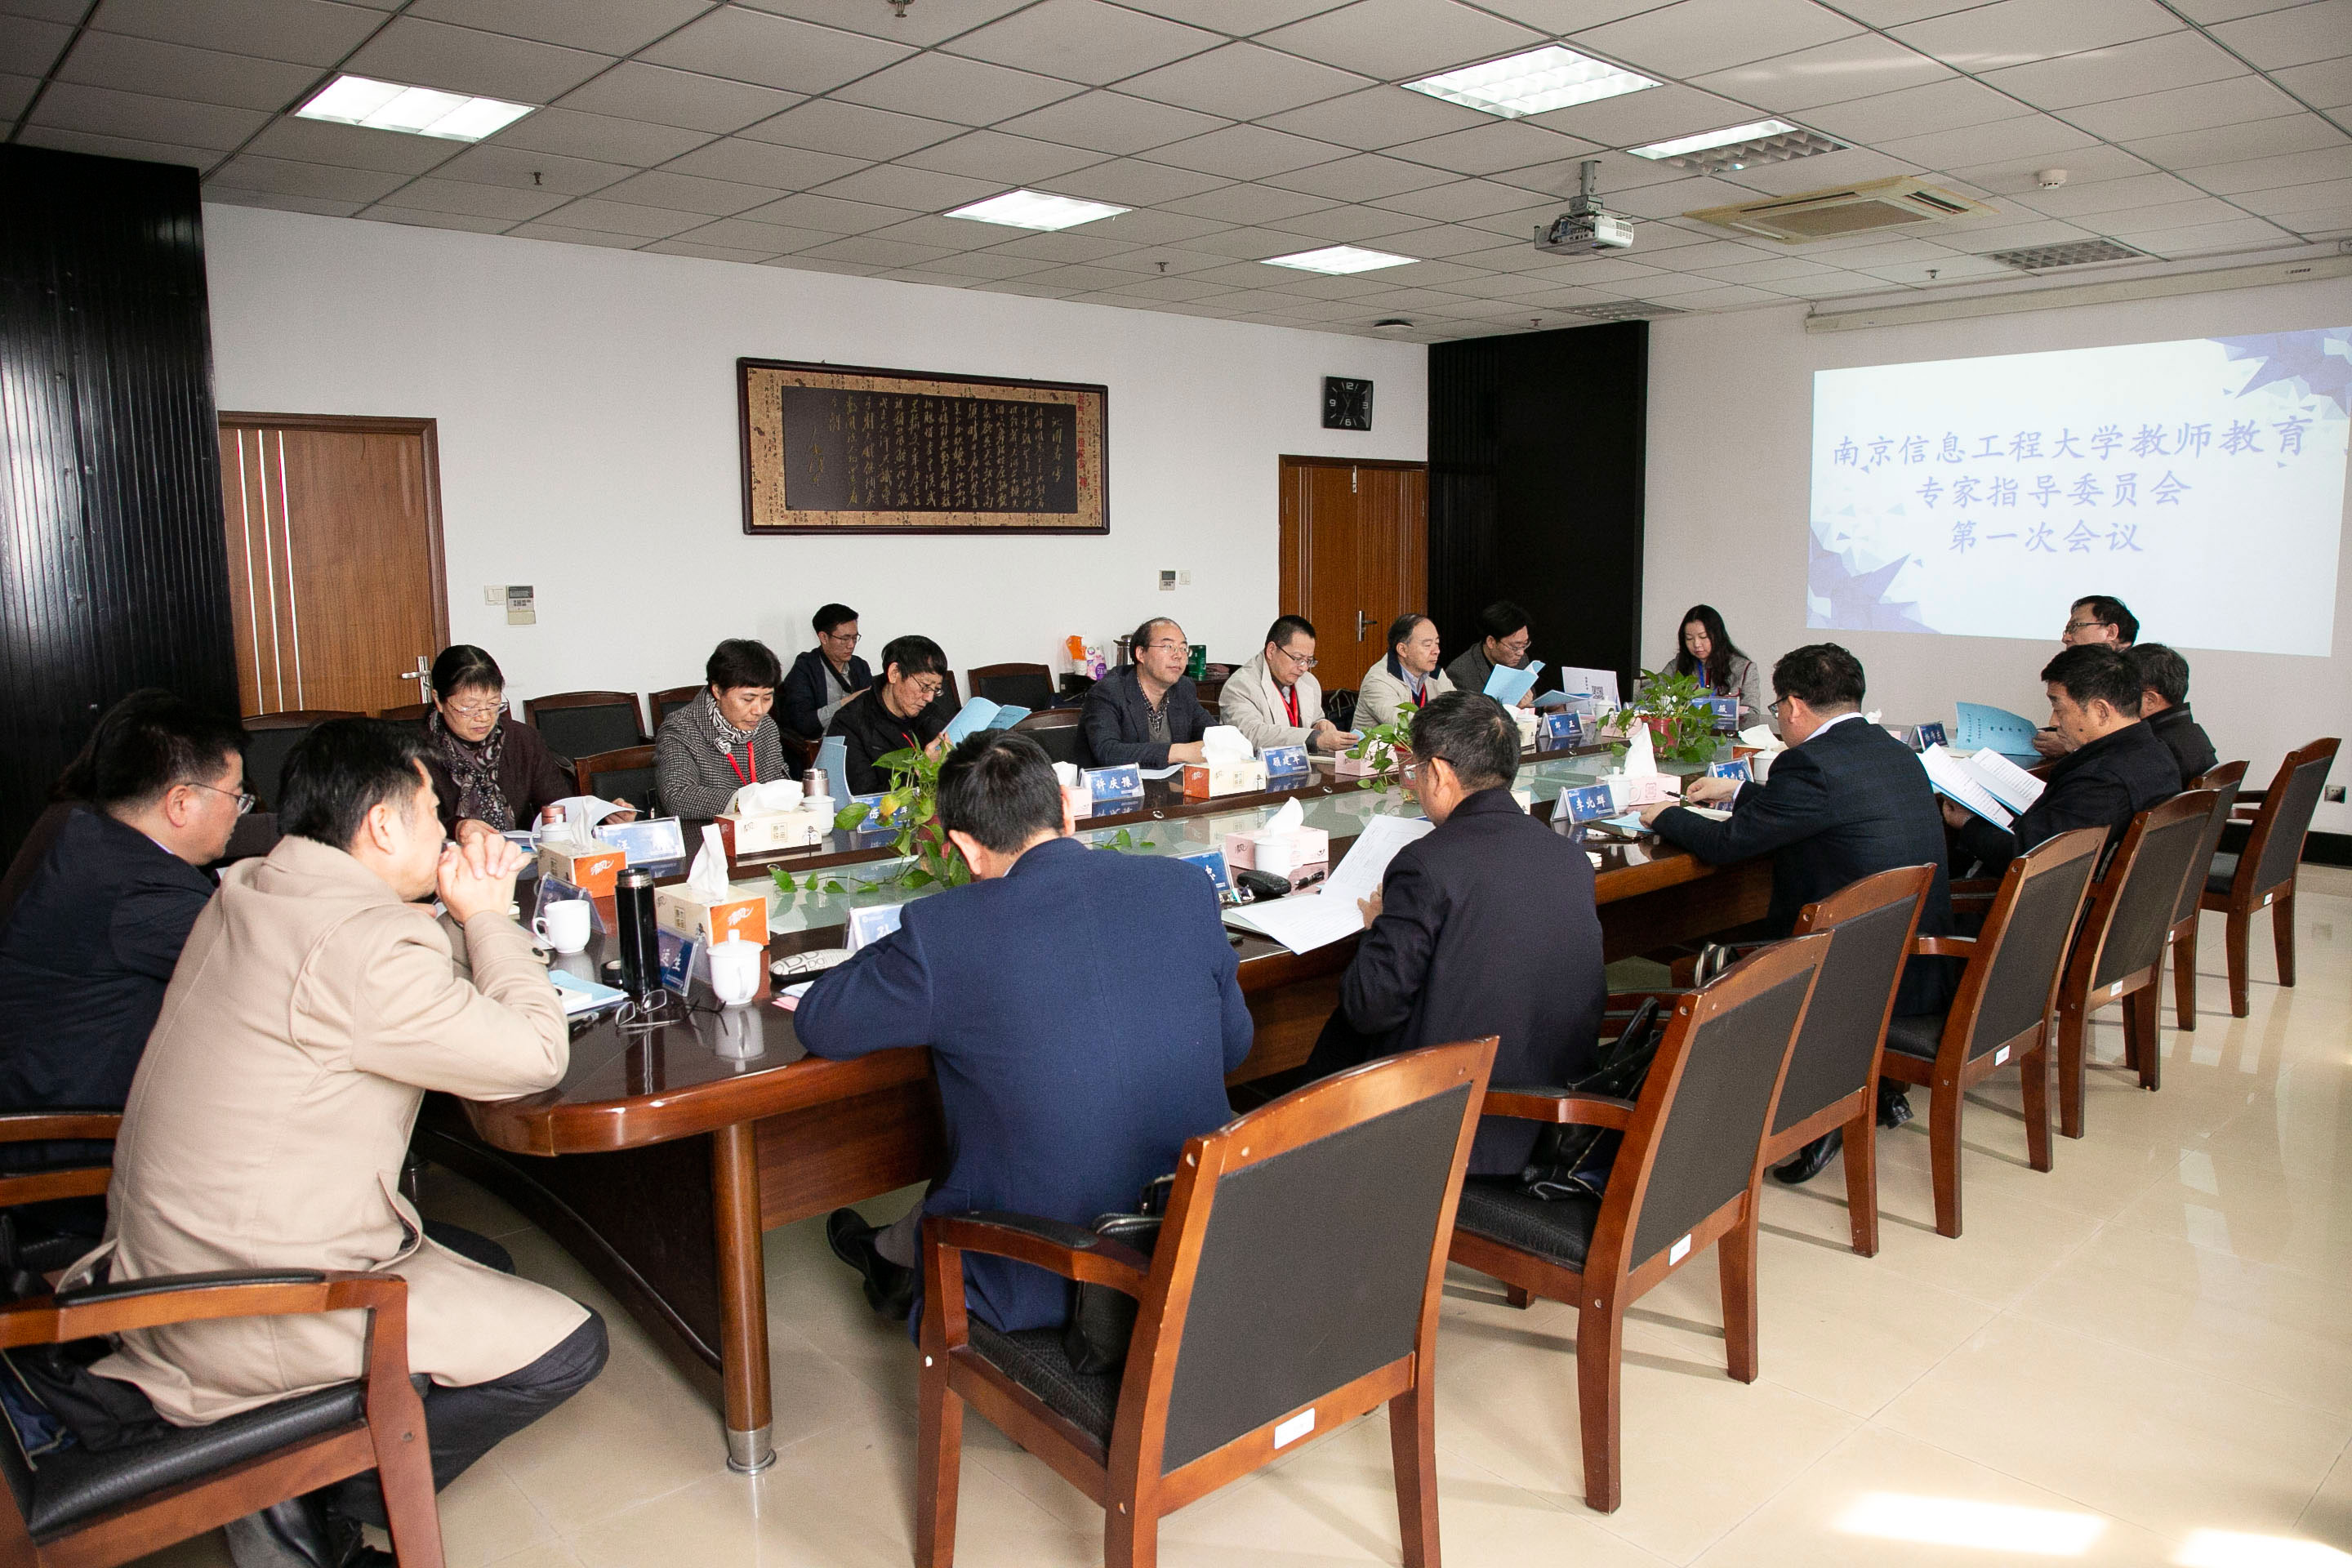 南京信息工程大学教师教育学院成立大会暨综合性大学教师教育发展研讨会在南京举行